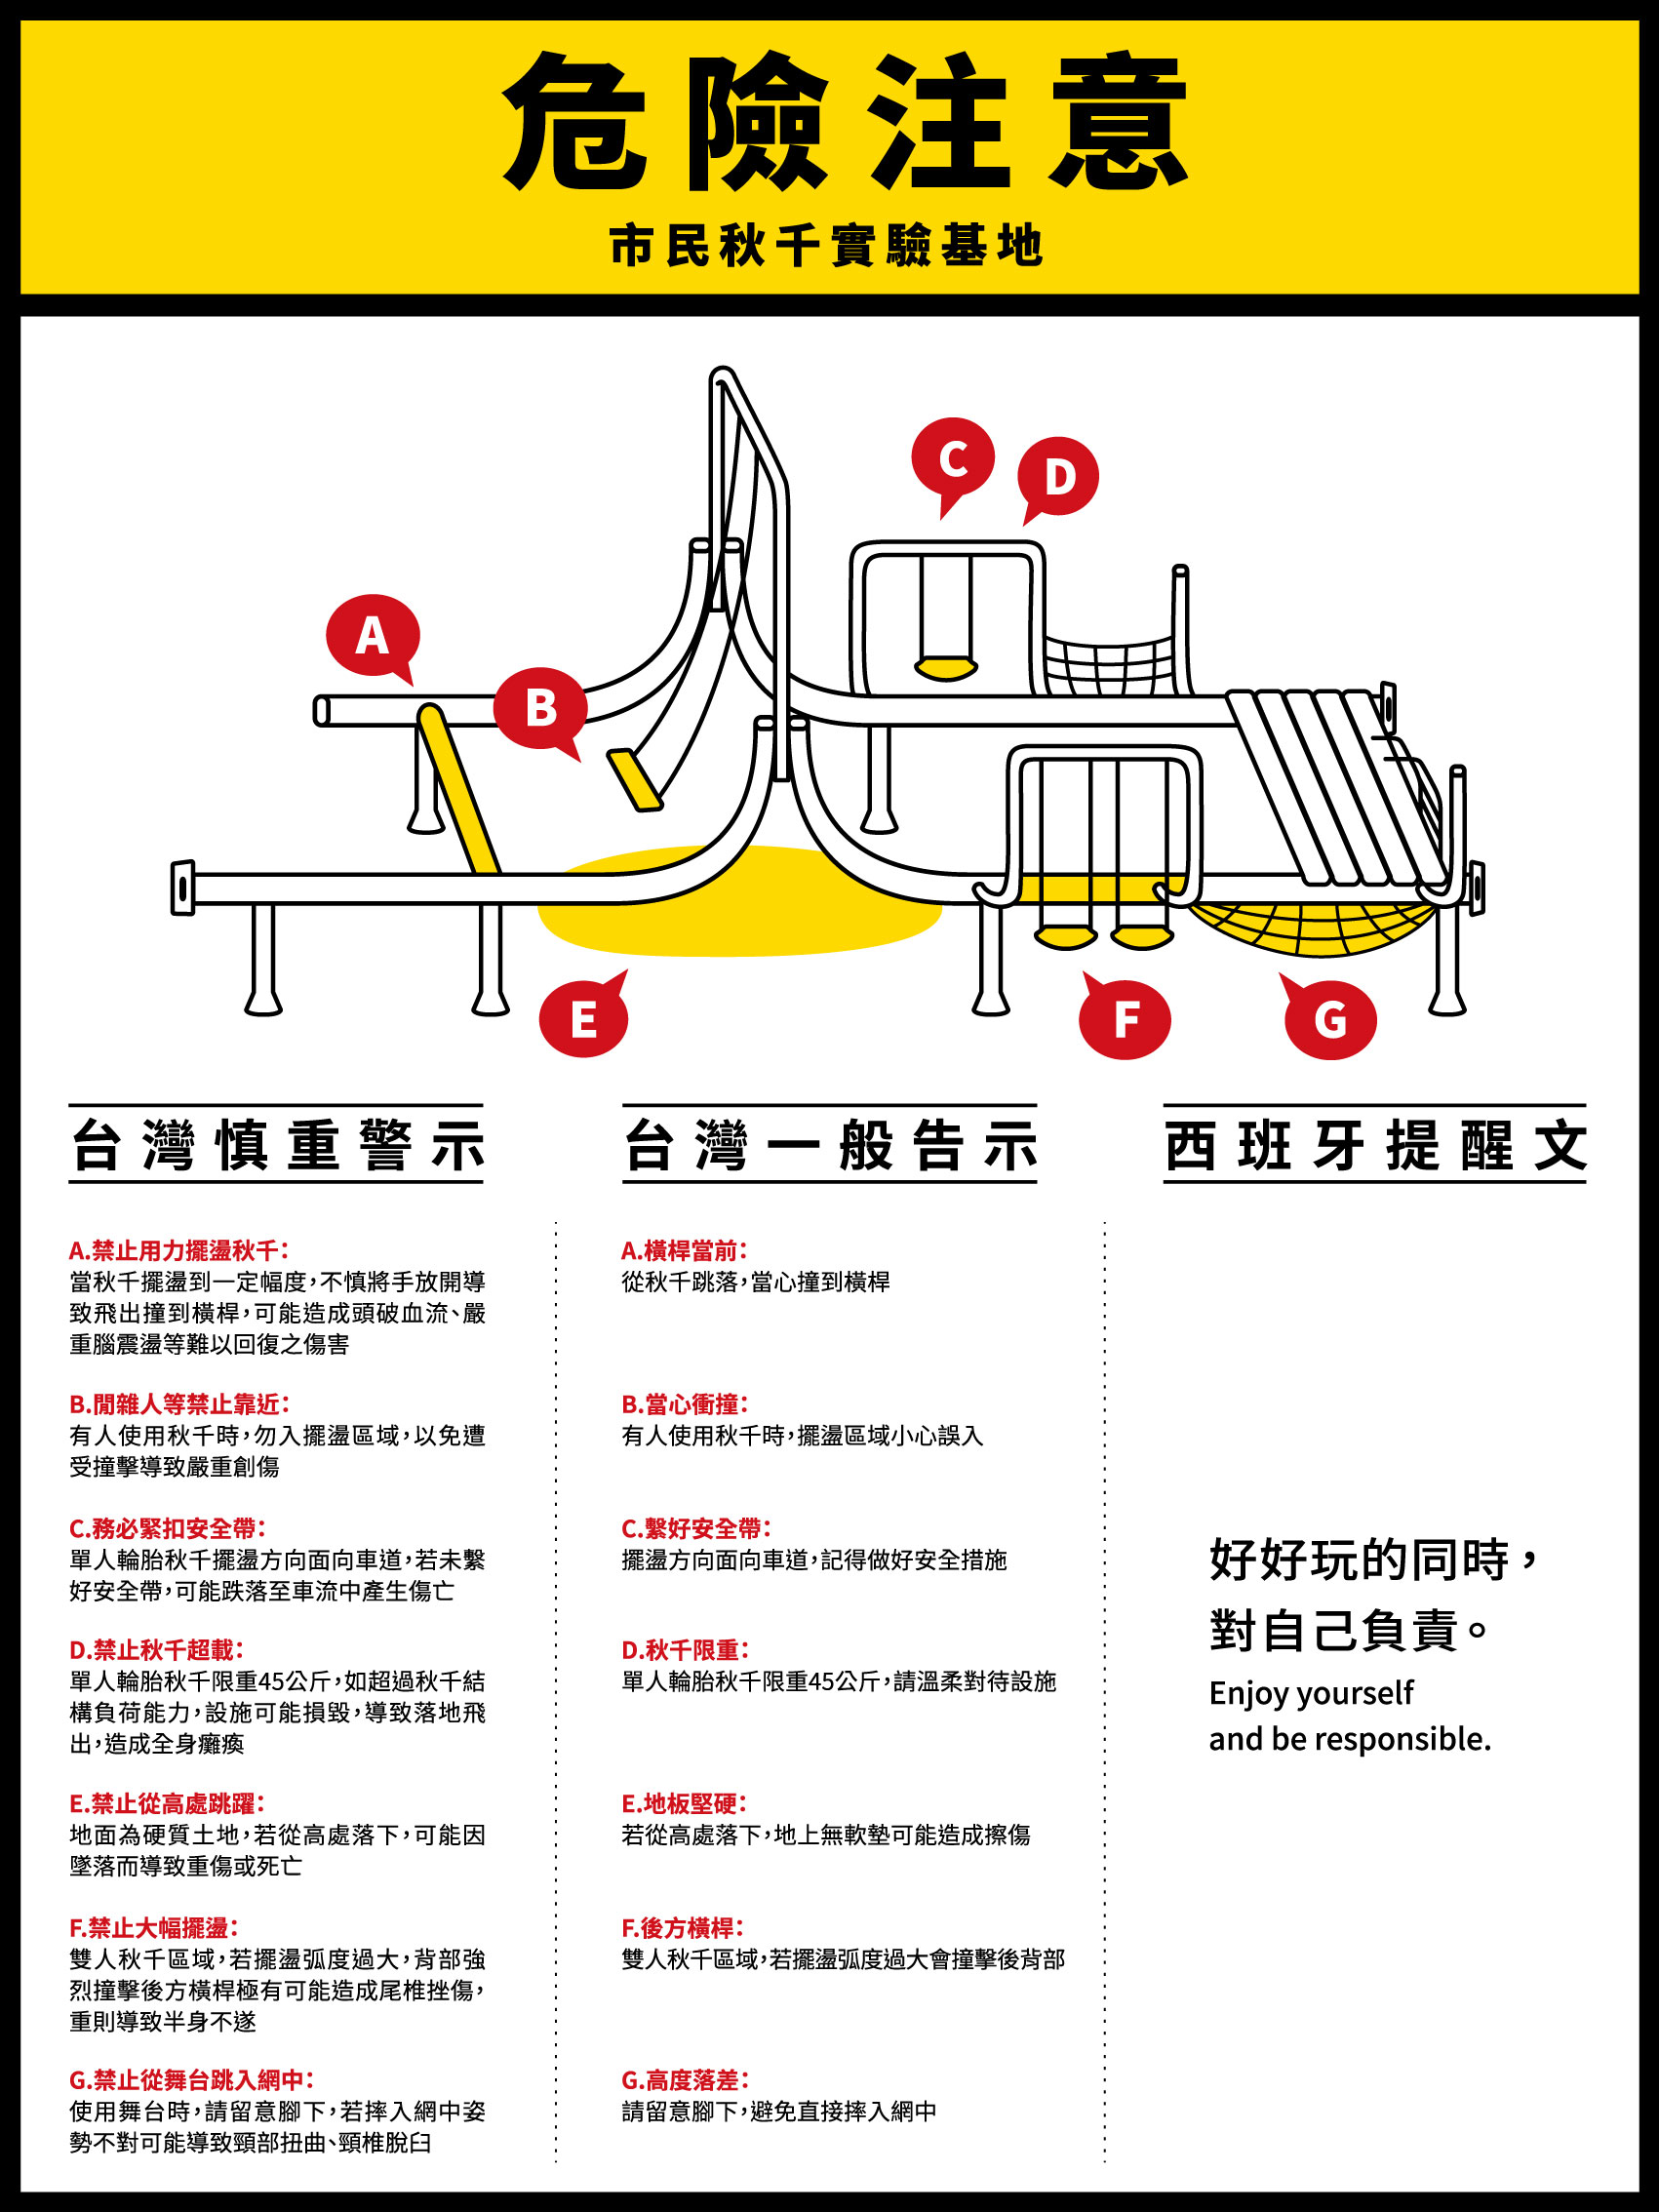 都市酵母, 水越設計, basurama, 台北鄰里公園翻轉計畫, re-create Taipei, 2016台北世界設計之都, WDC Taipei, world design capital Taipei, park, 公園, 公共空間